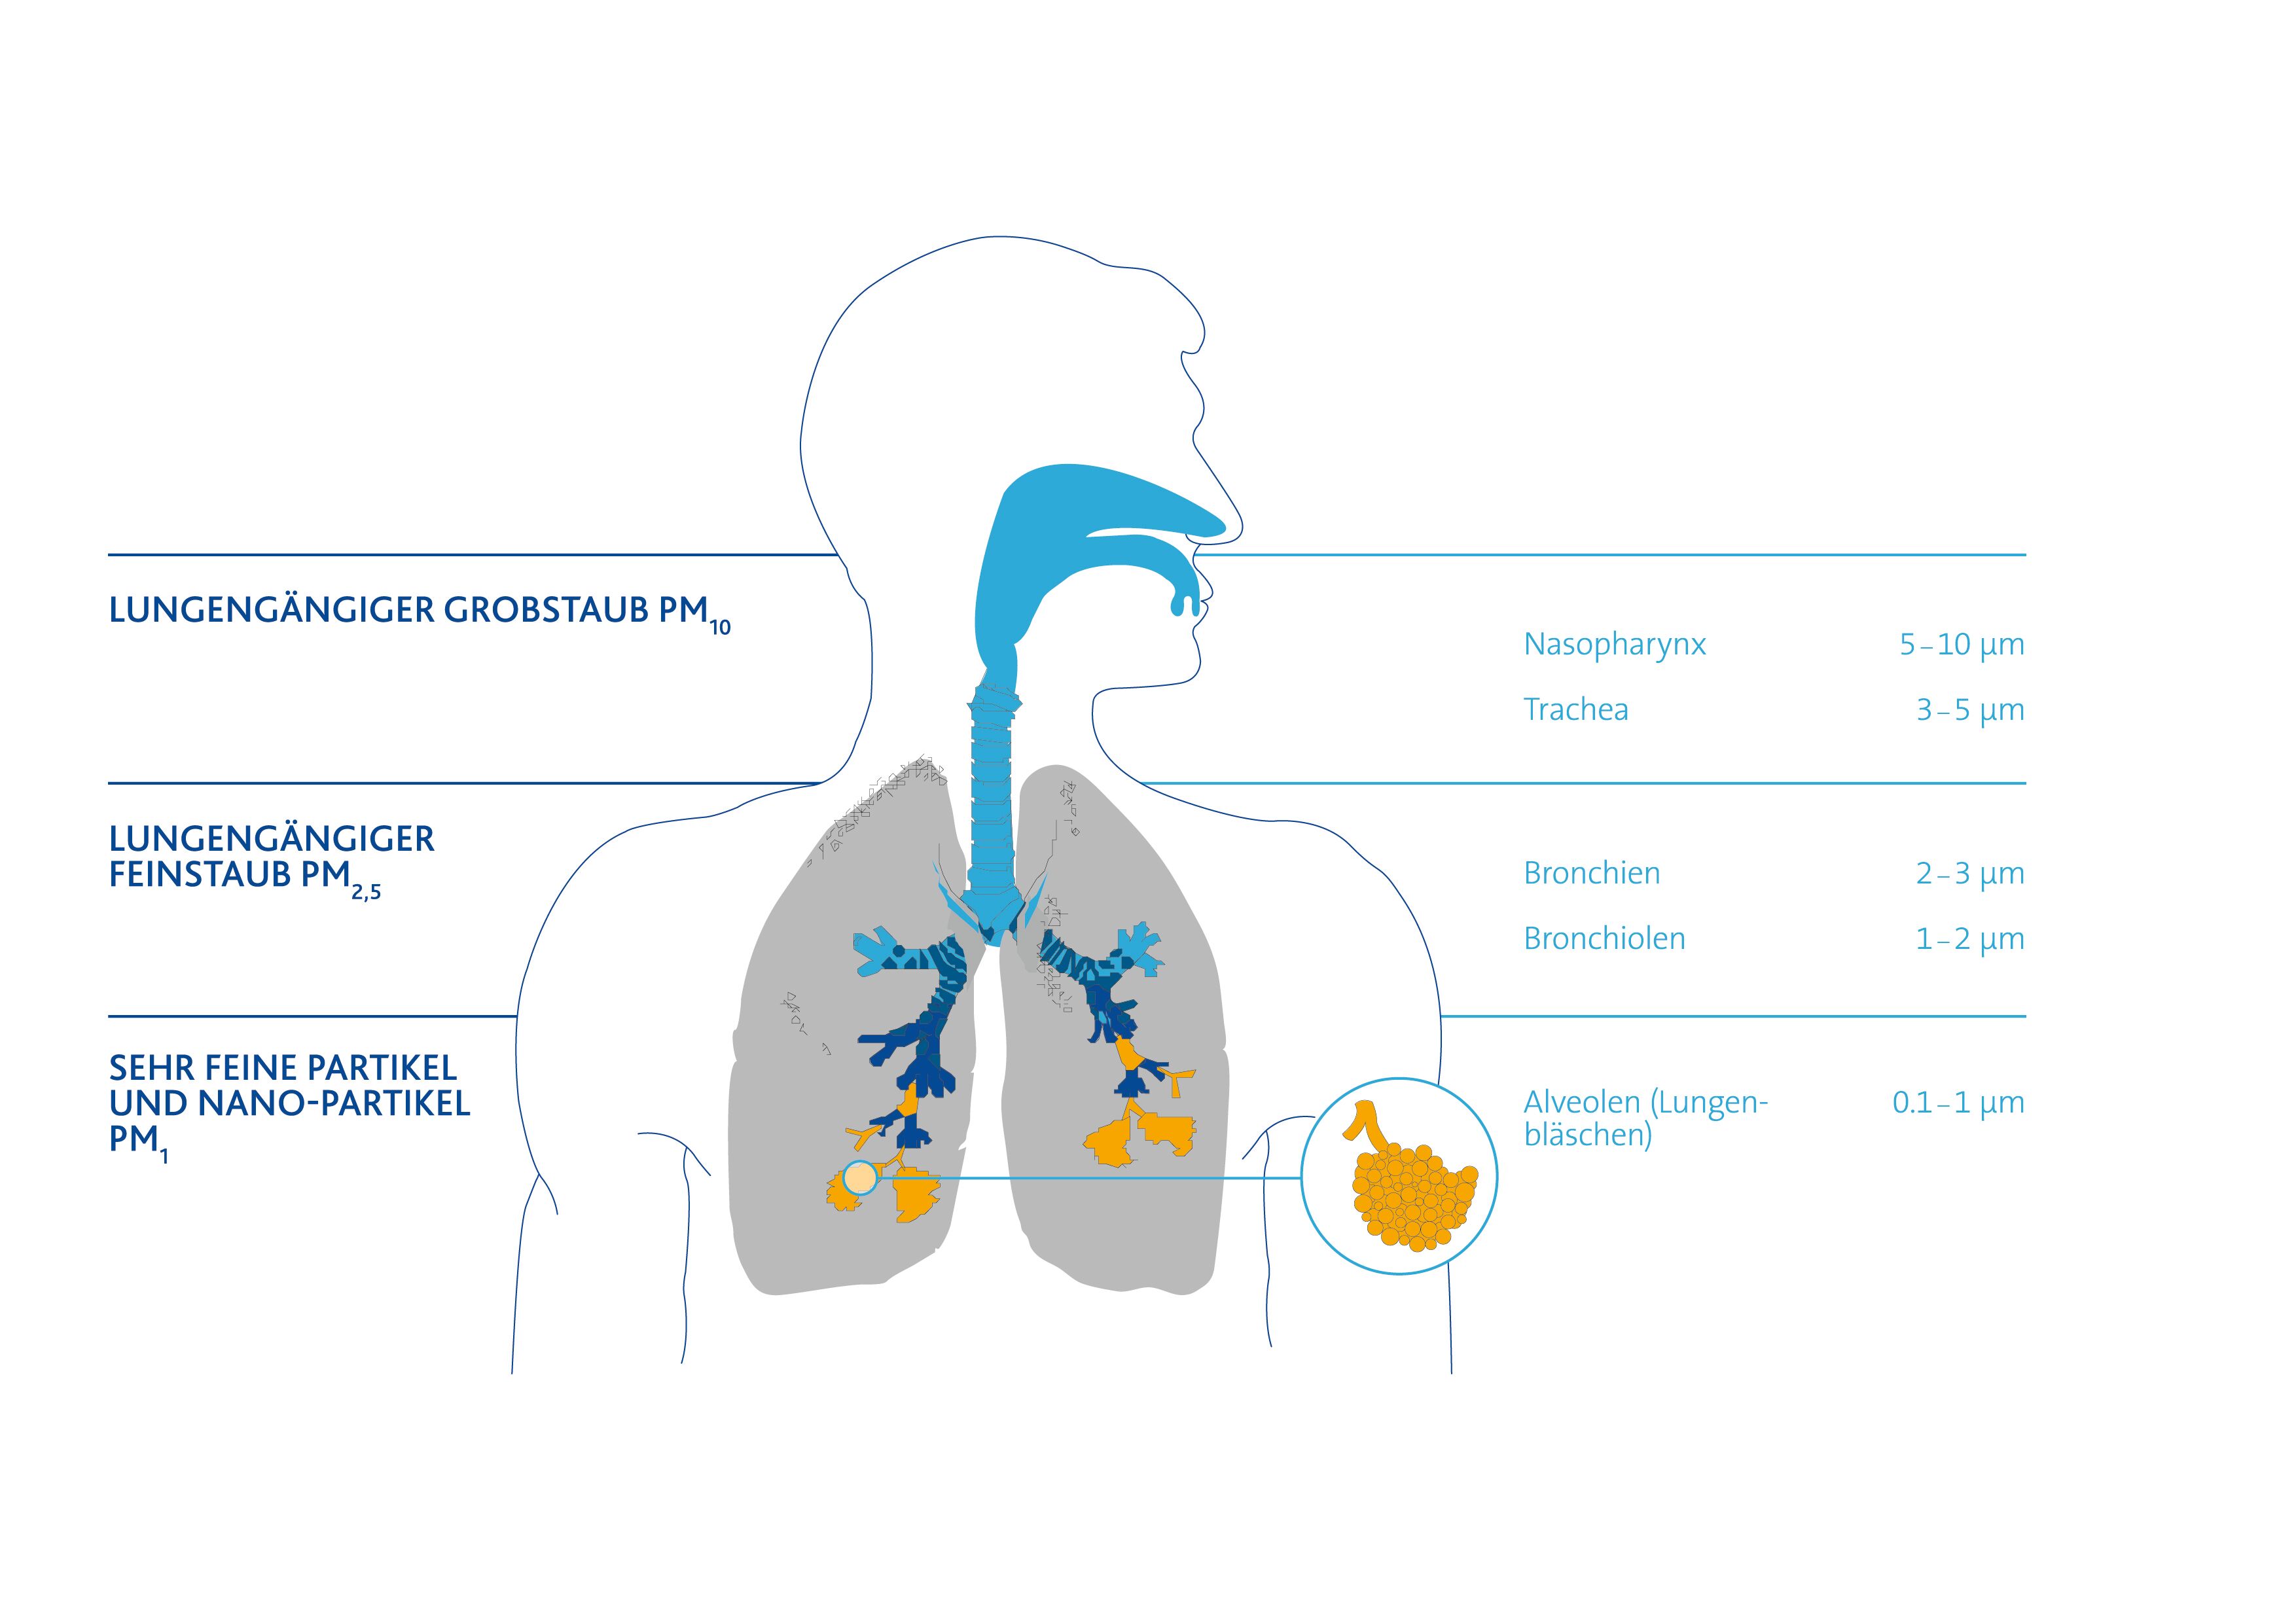 Größenabhängige Ablagerung von Partikel wie Pollen, Staub, Bakterien und Viren im Respirationstrakt (PM = Particulate Matter)